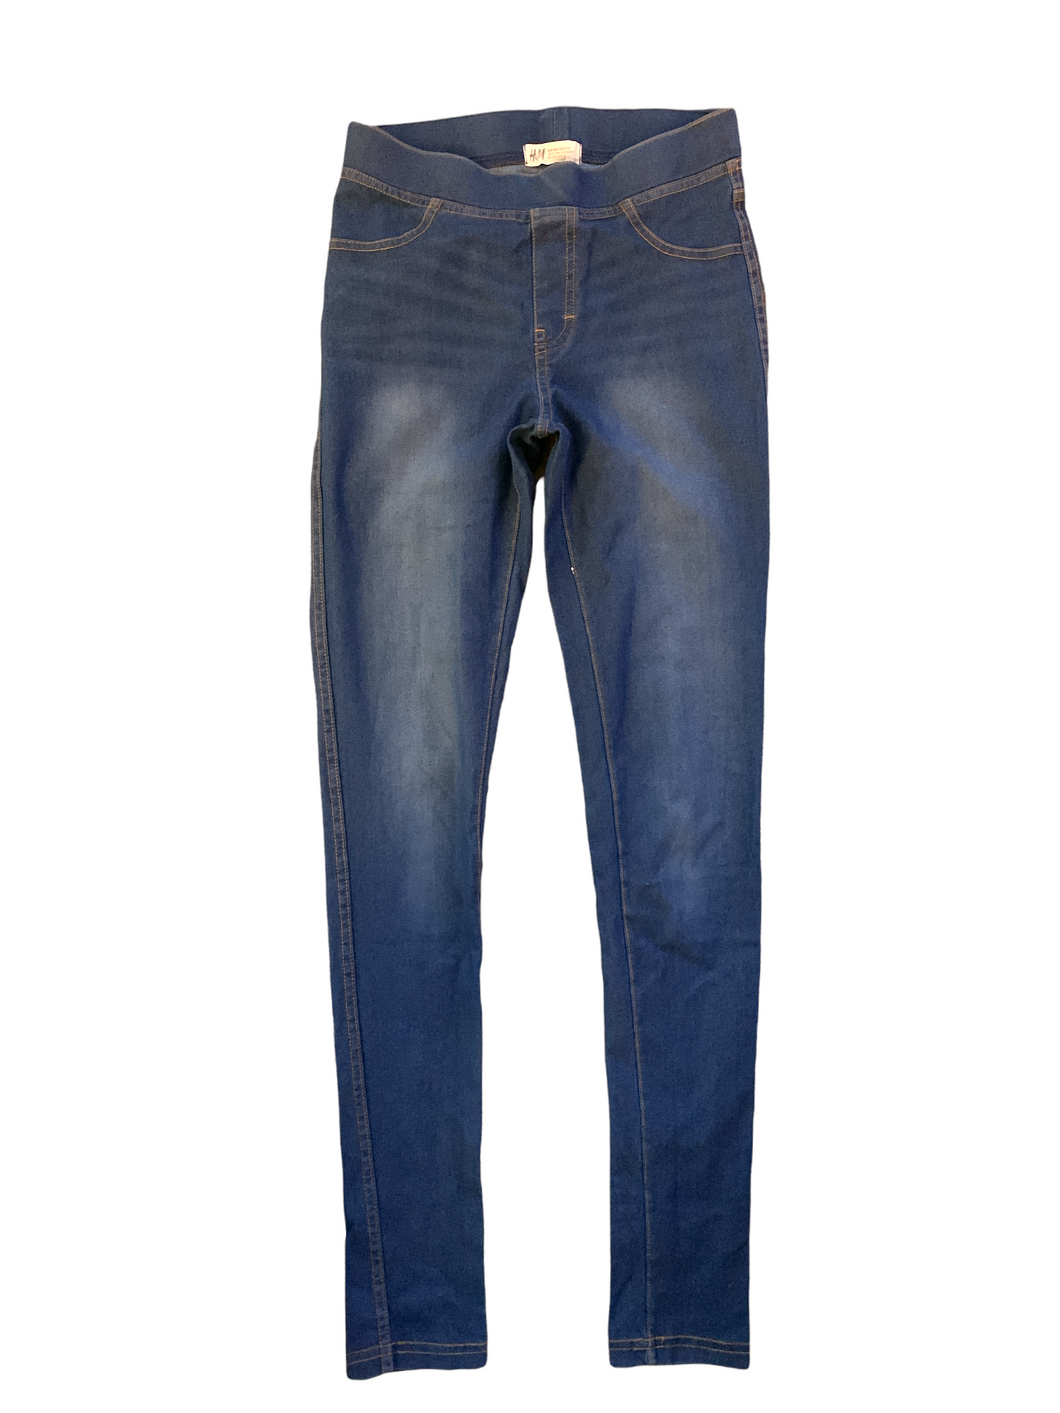 Blå jeans leggings H&M 158